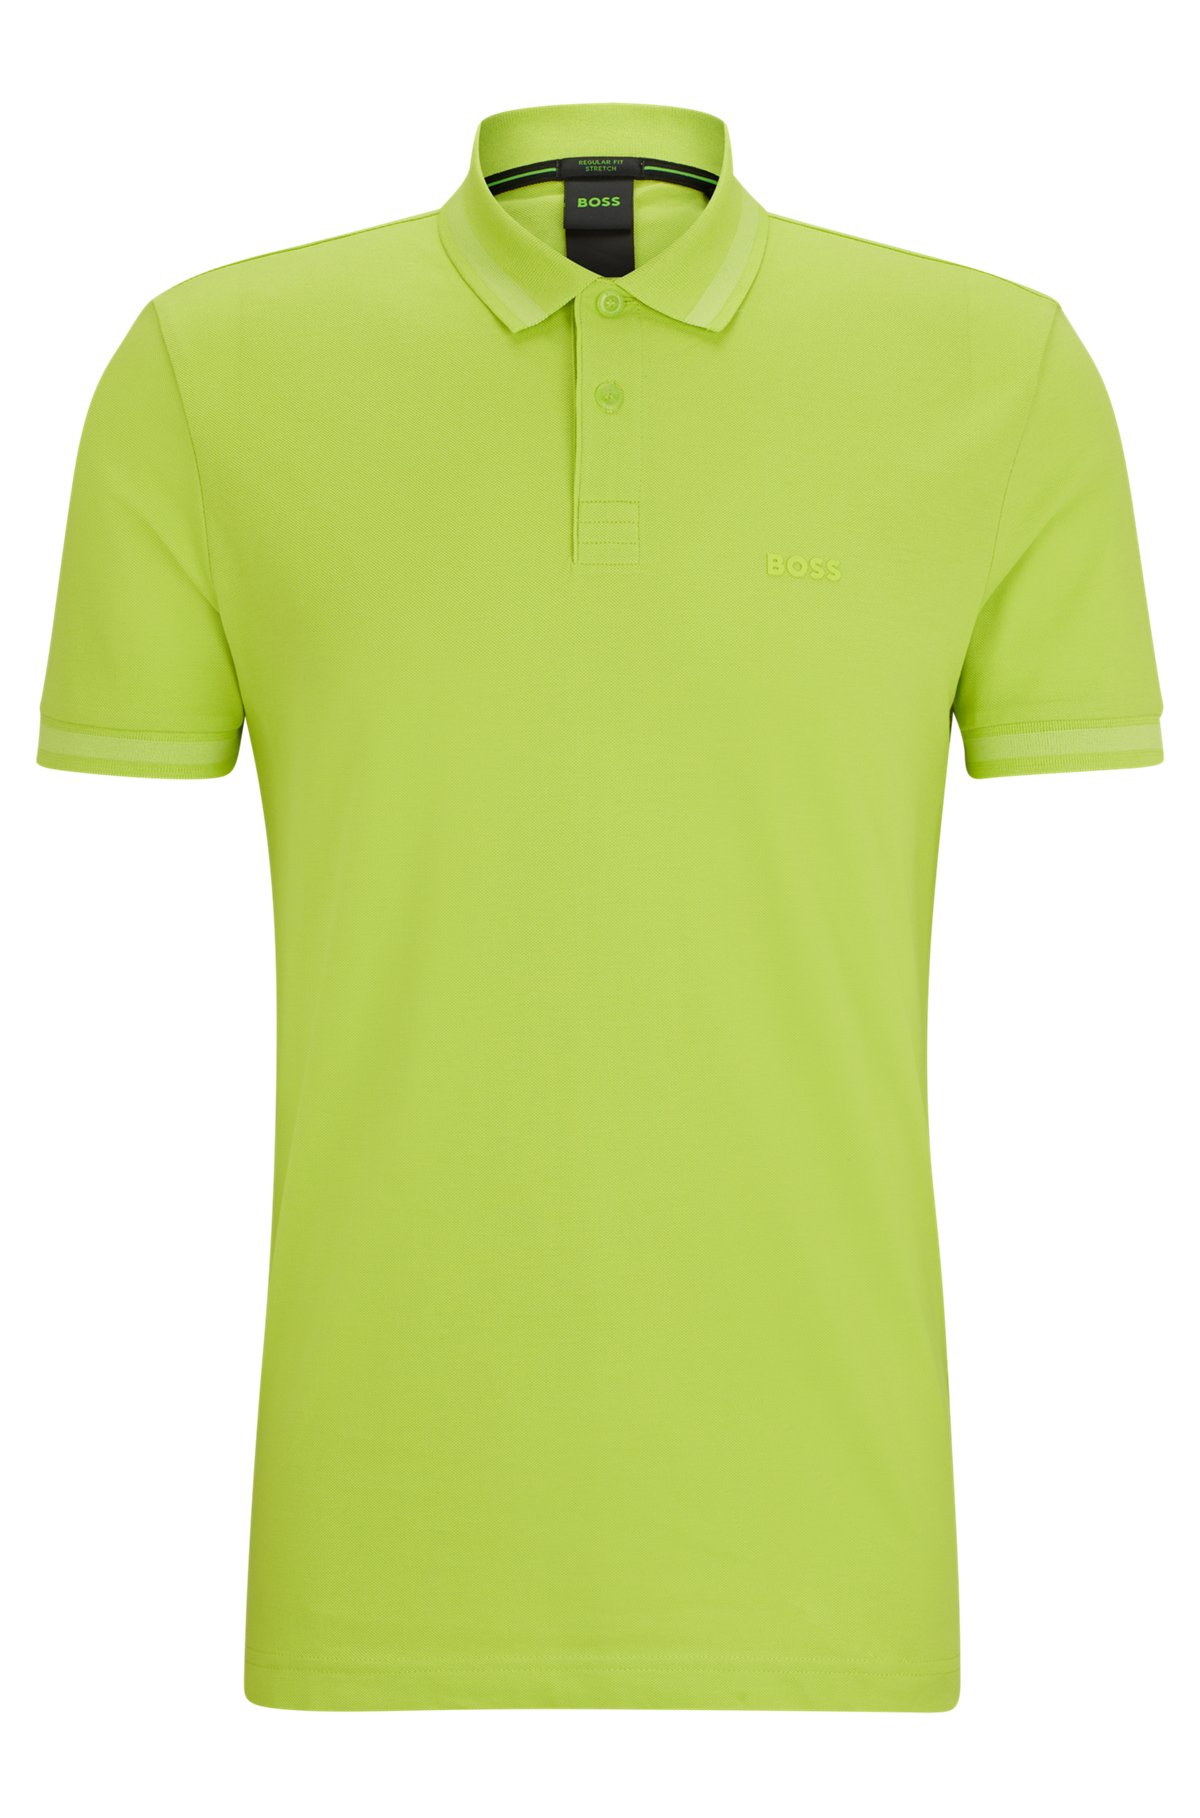 Cotton-piqué polo shirt with tonal logo, Green